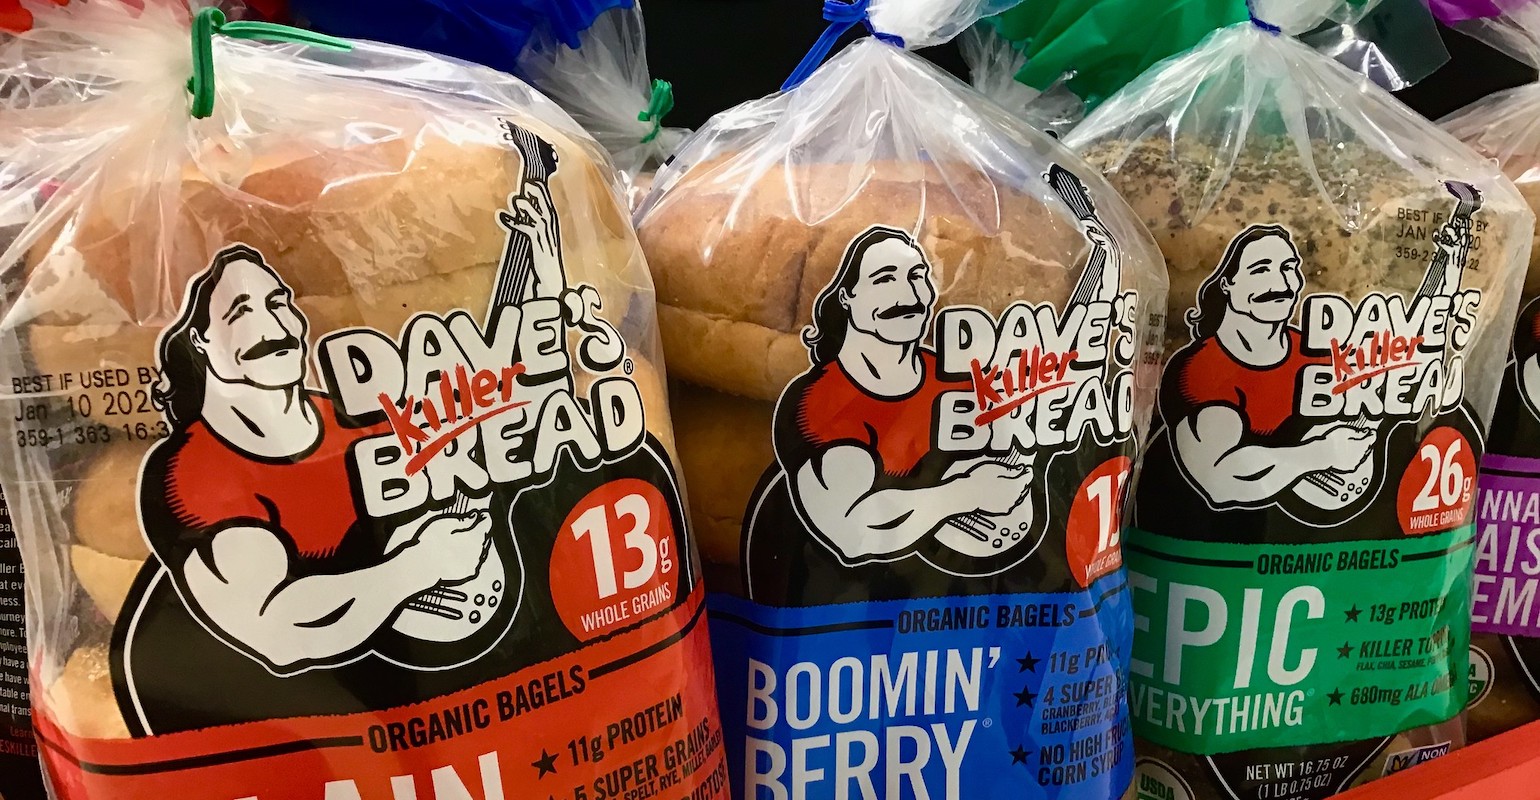 dave's killer bread bagel